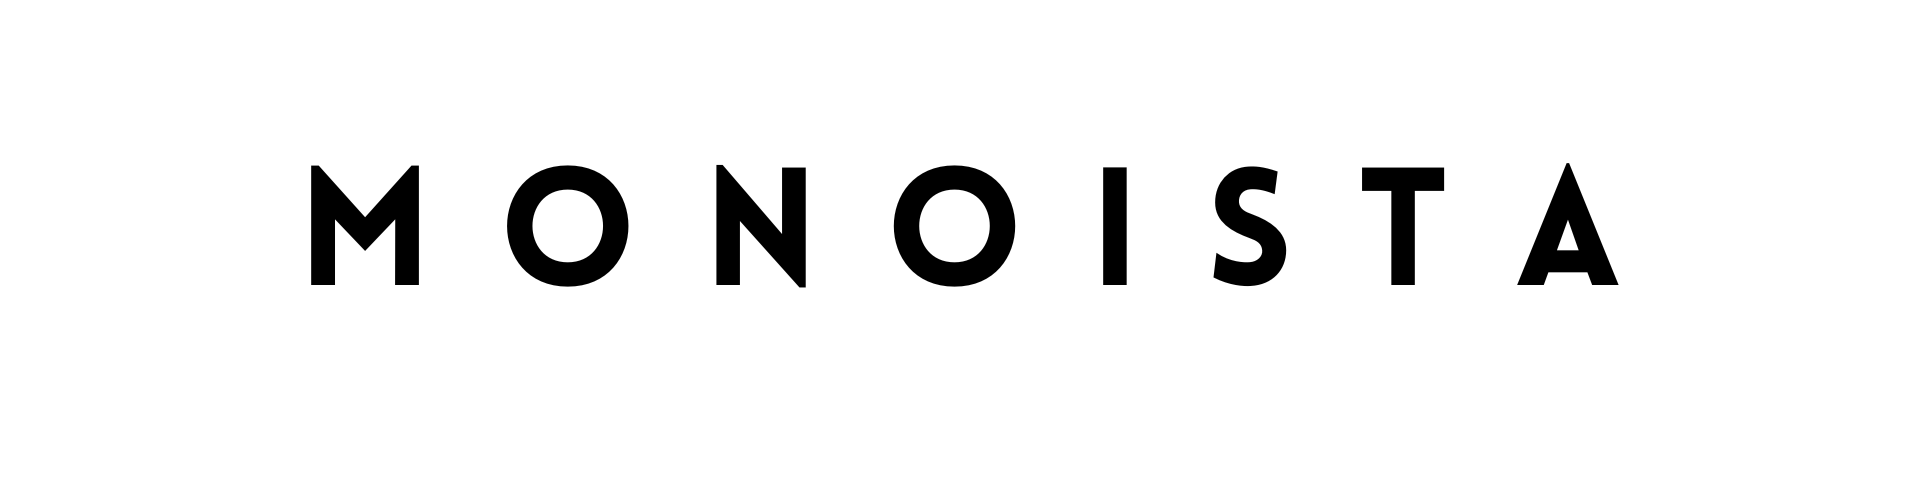 MONOISTA logo - Einfache Schweiß-Projekte für Anfänger